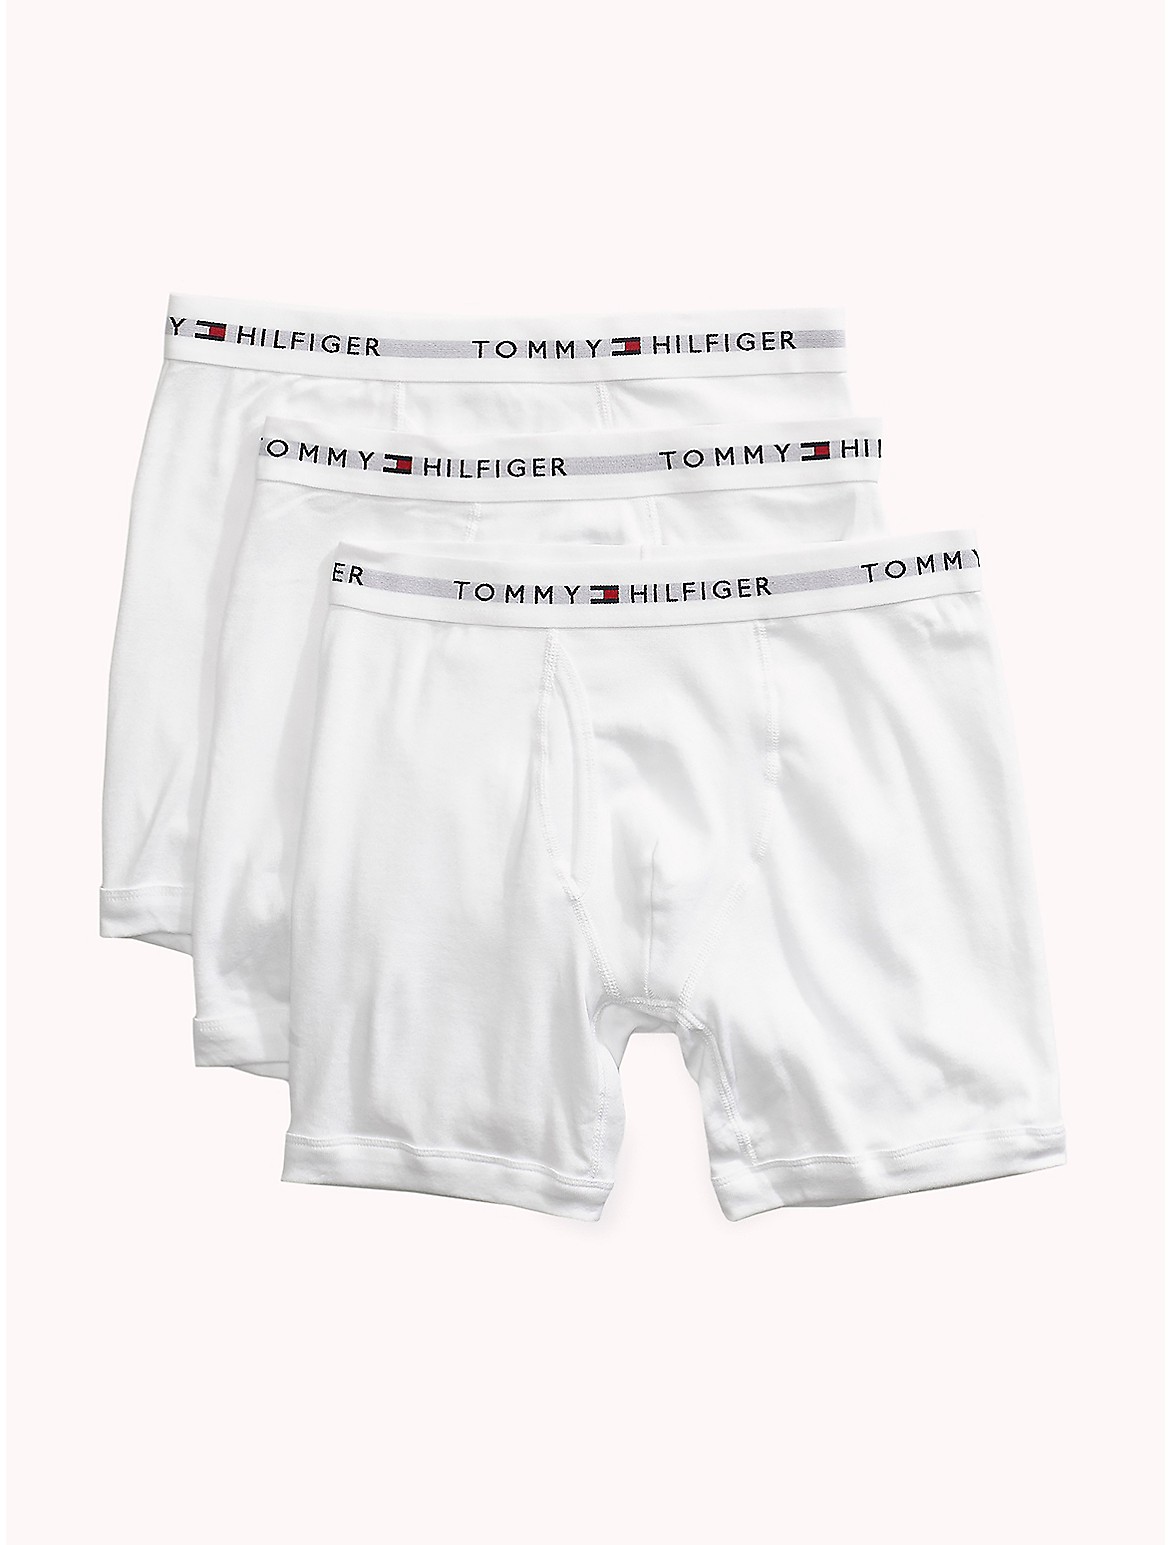 Tommy Hilfiger Men's Cotton Classics Boxer Brief 3-Pack - White/Natural - L